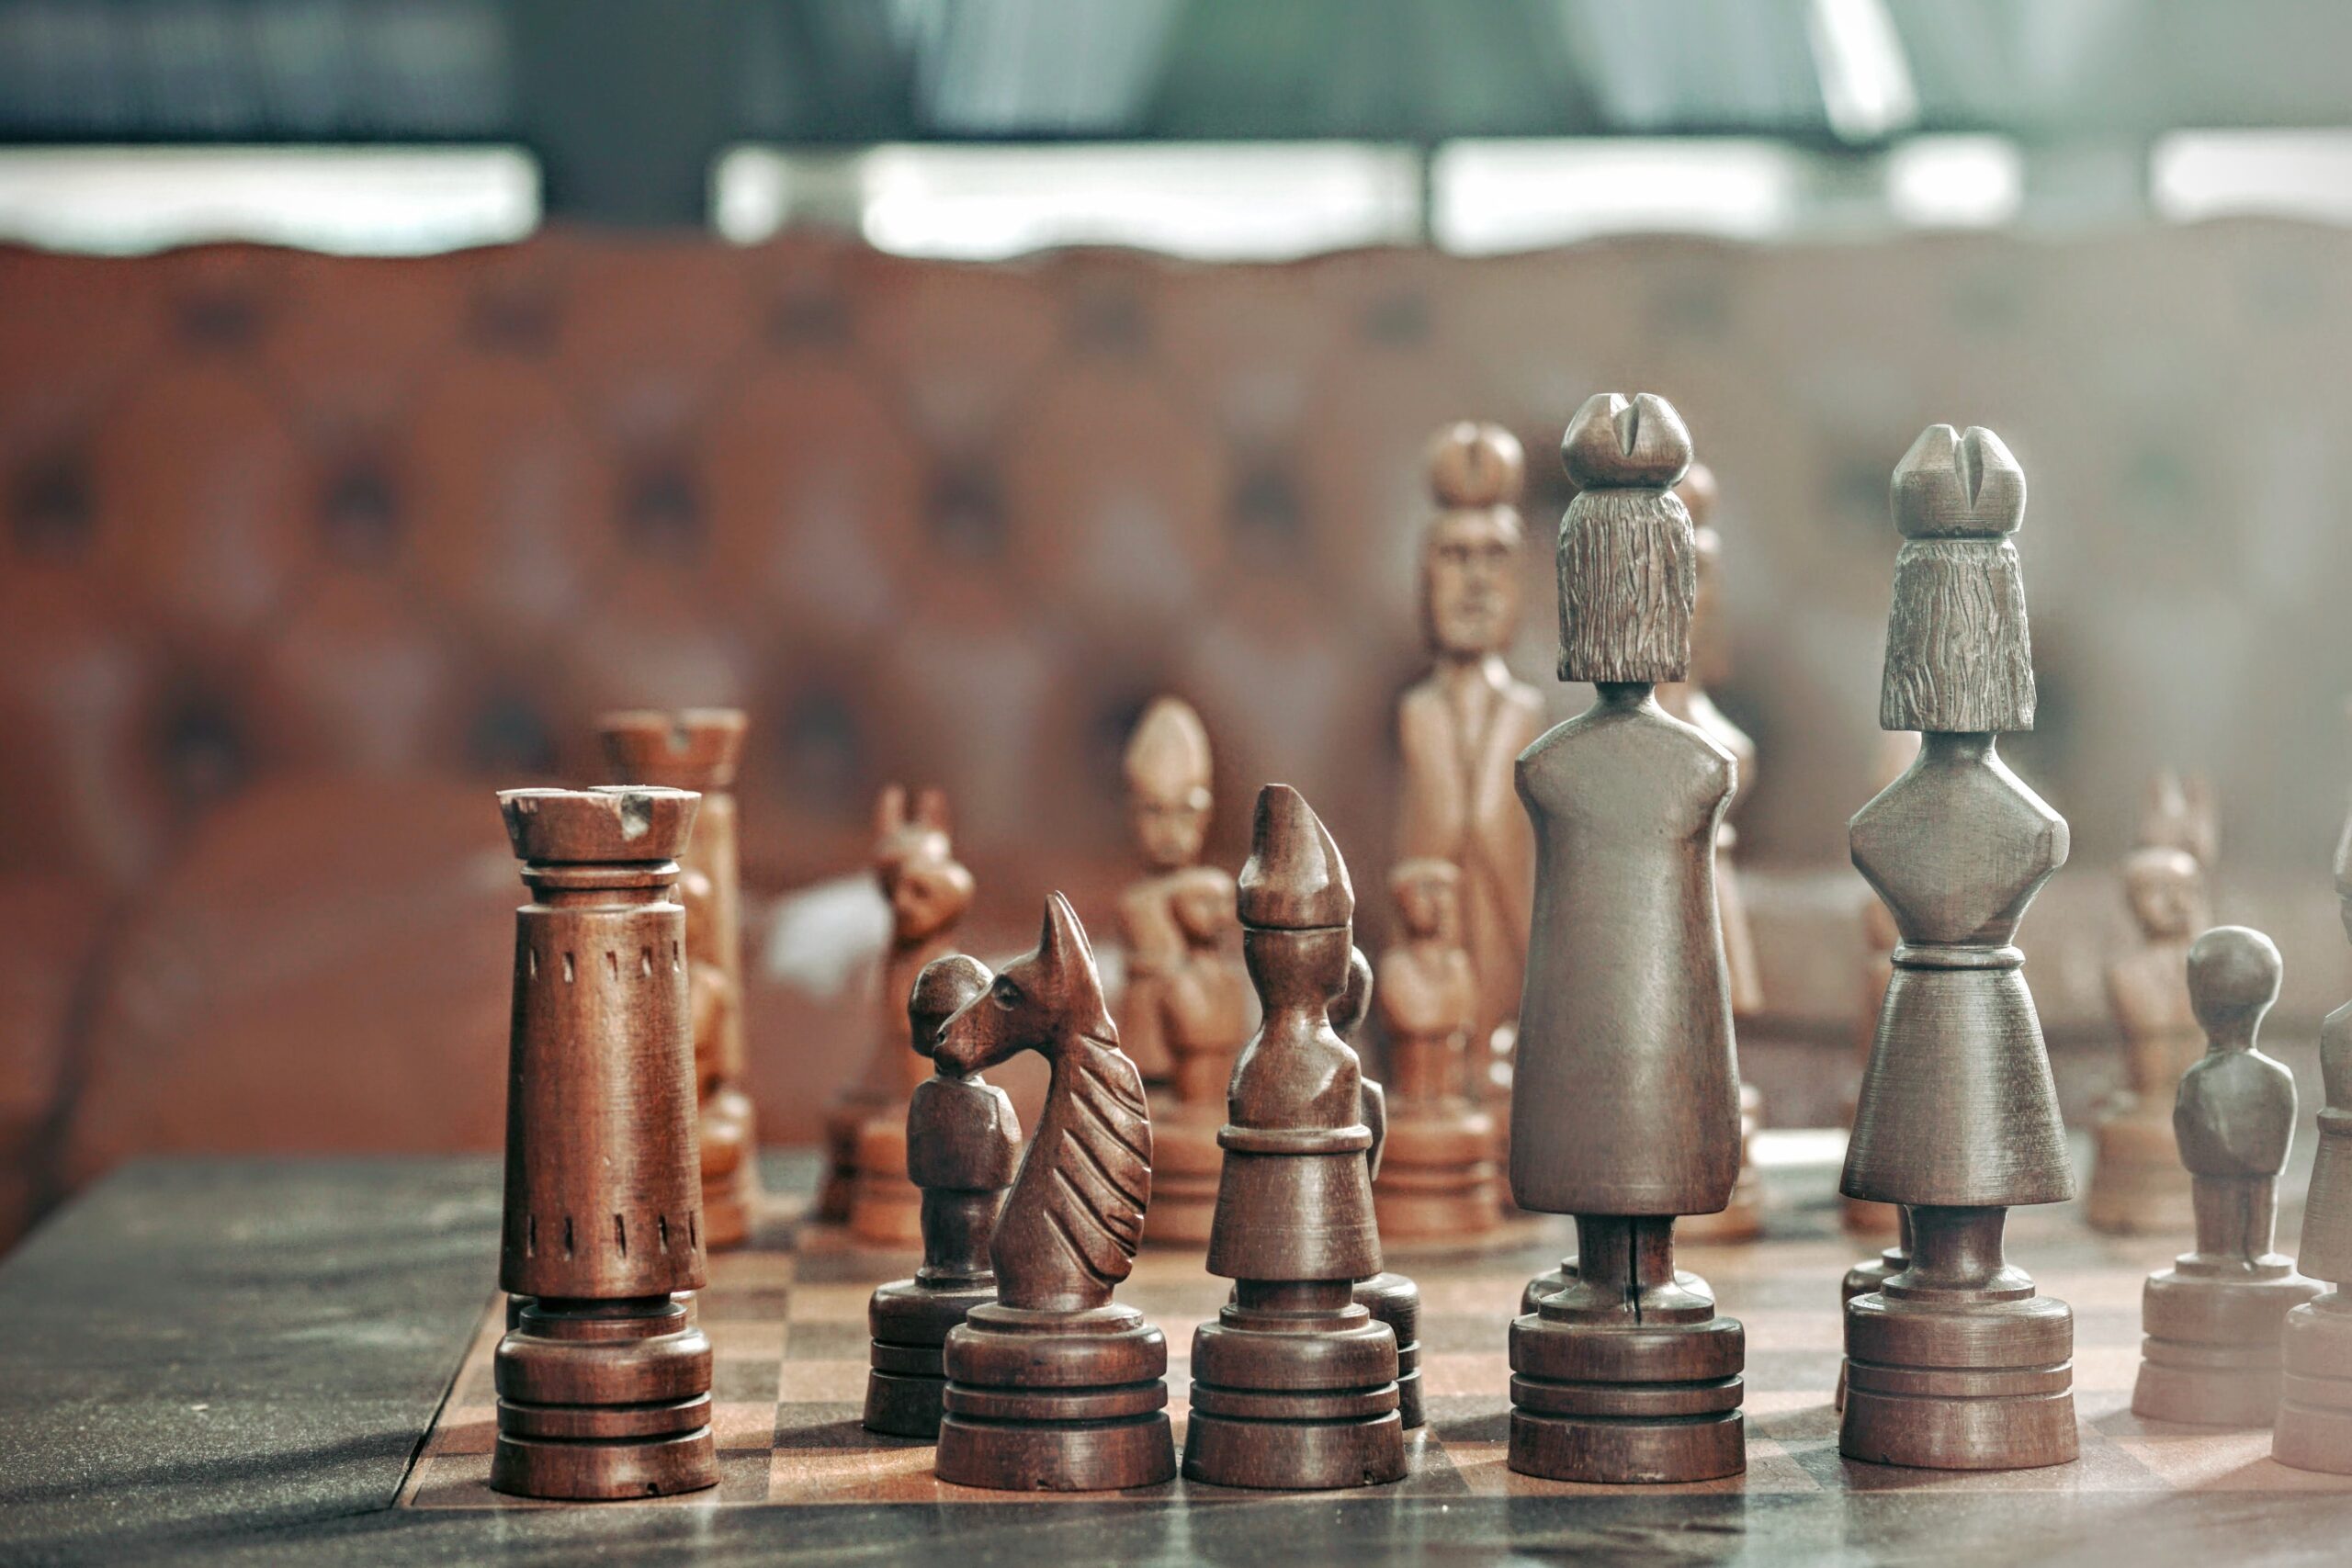 Image of a chessboard. Image by Maarten Van Den Huevel on Unsplash.